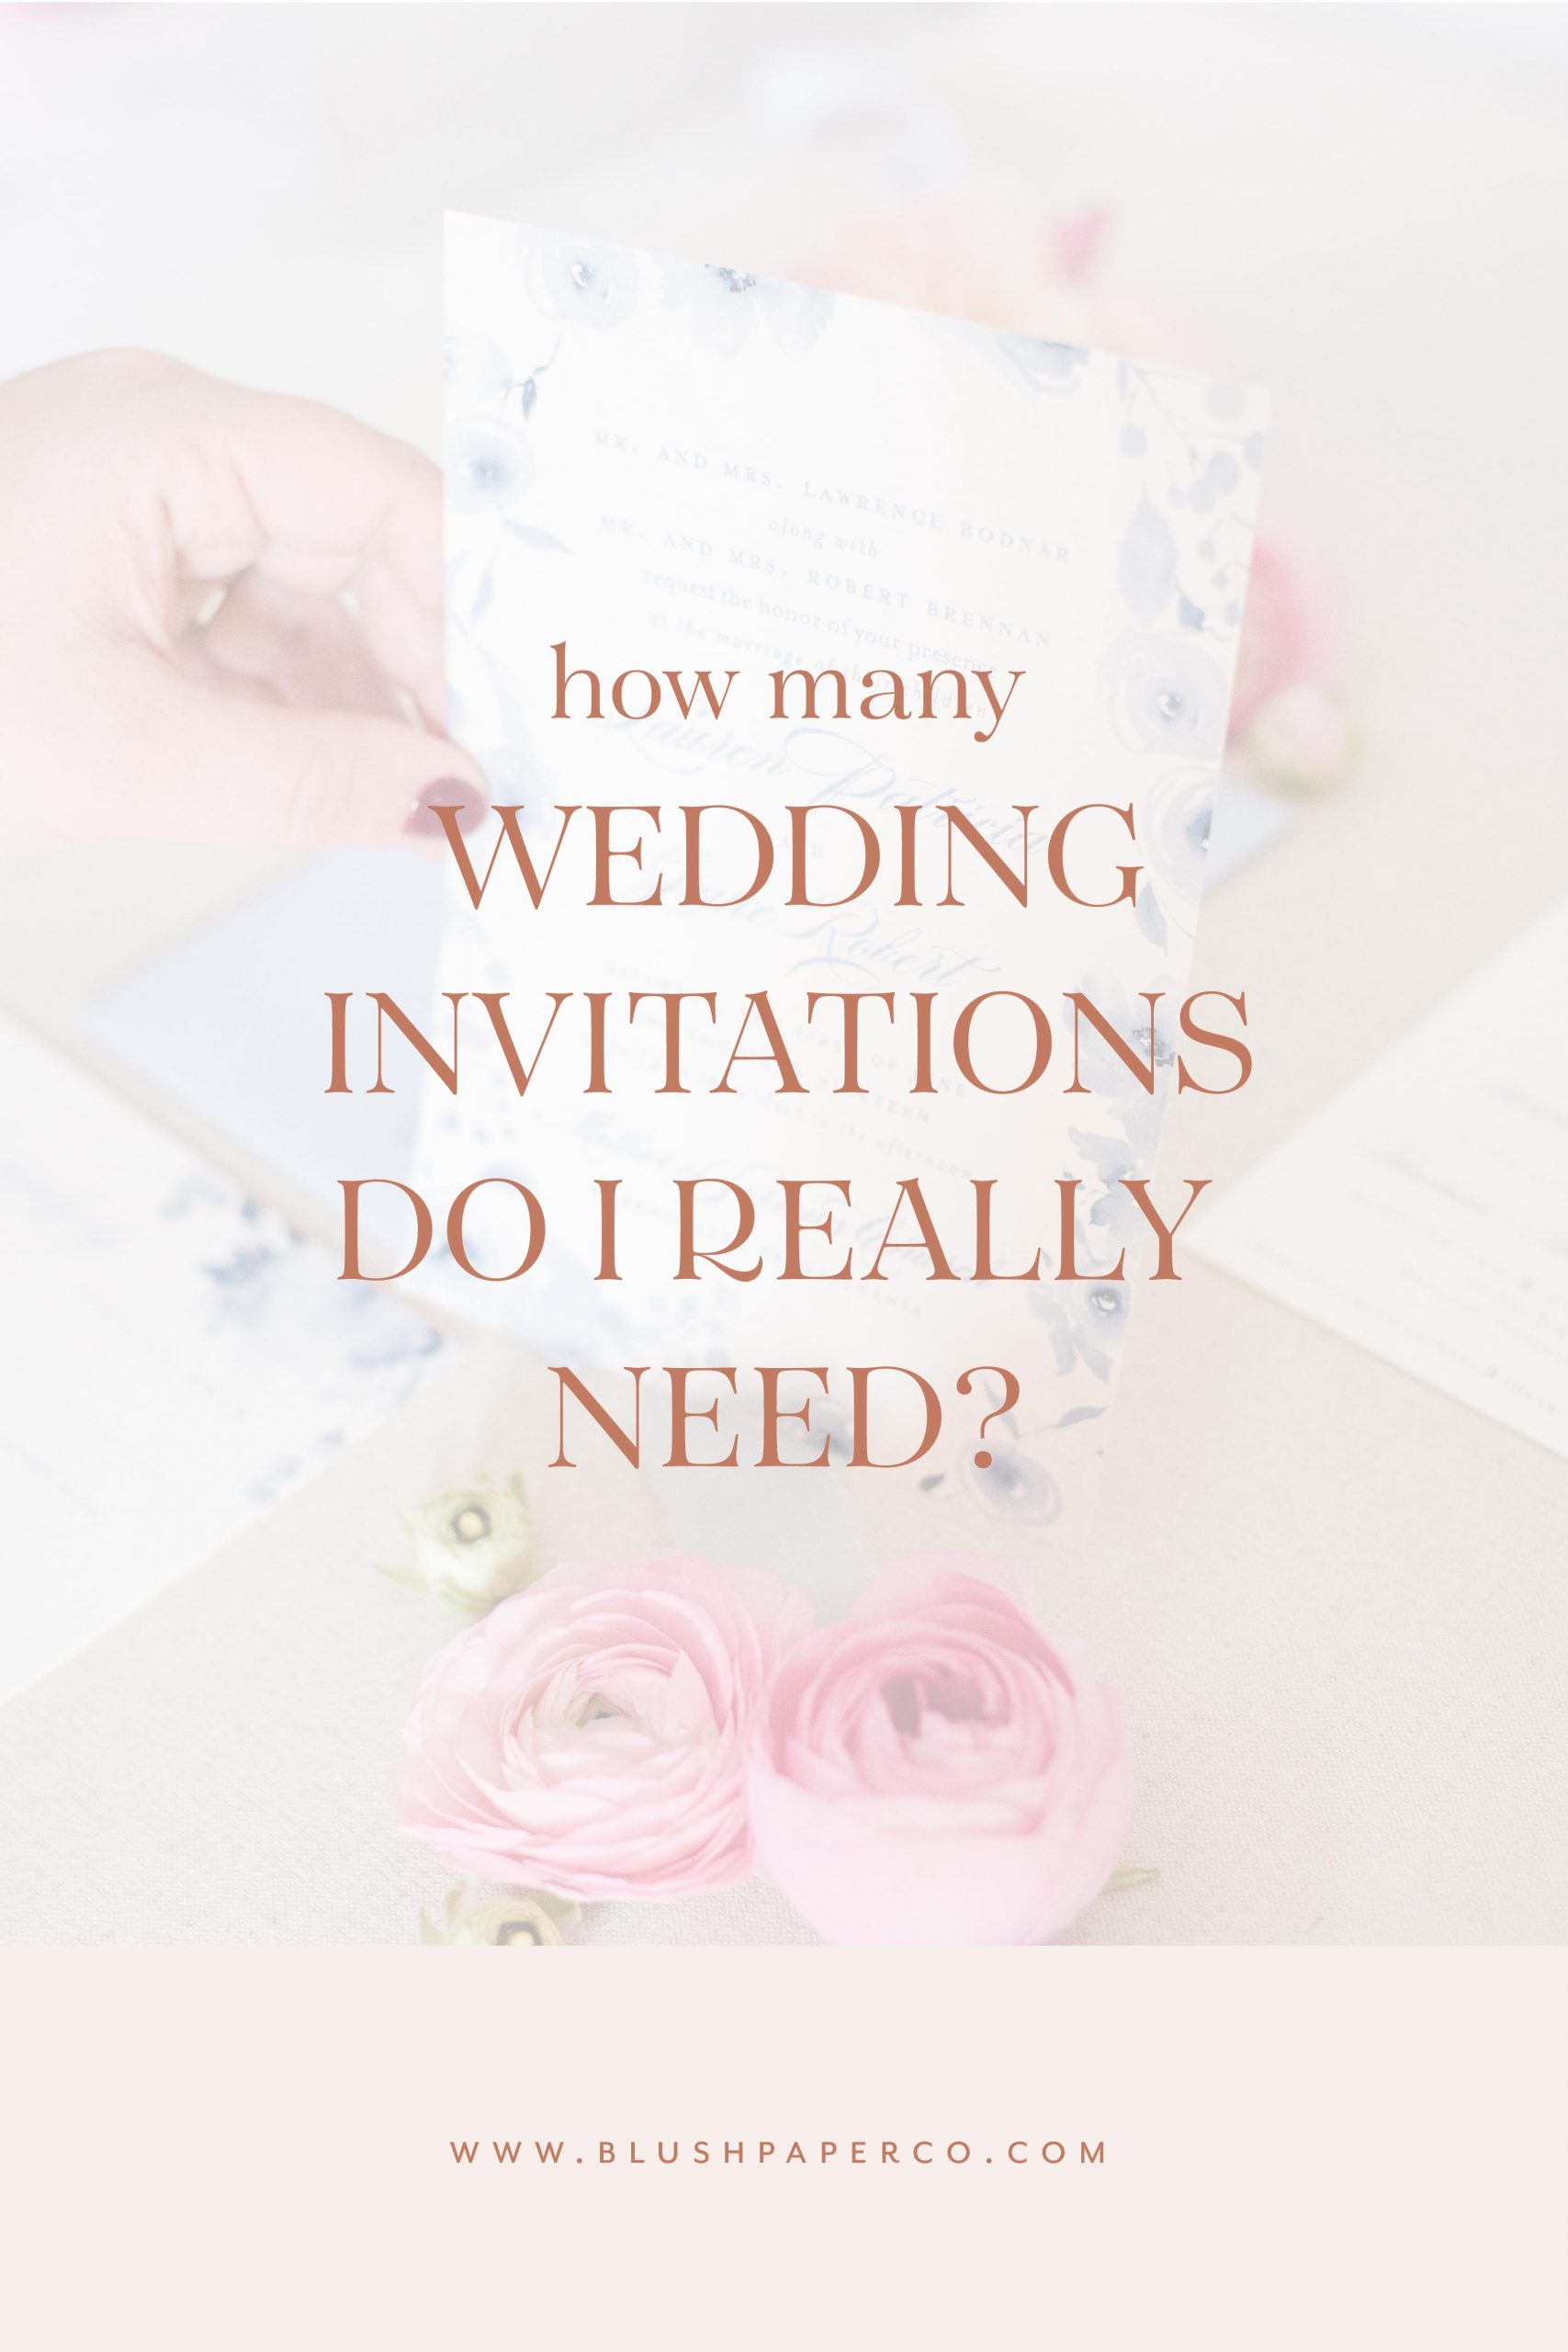 how many wedding invitations do i really need?